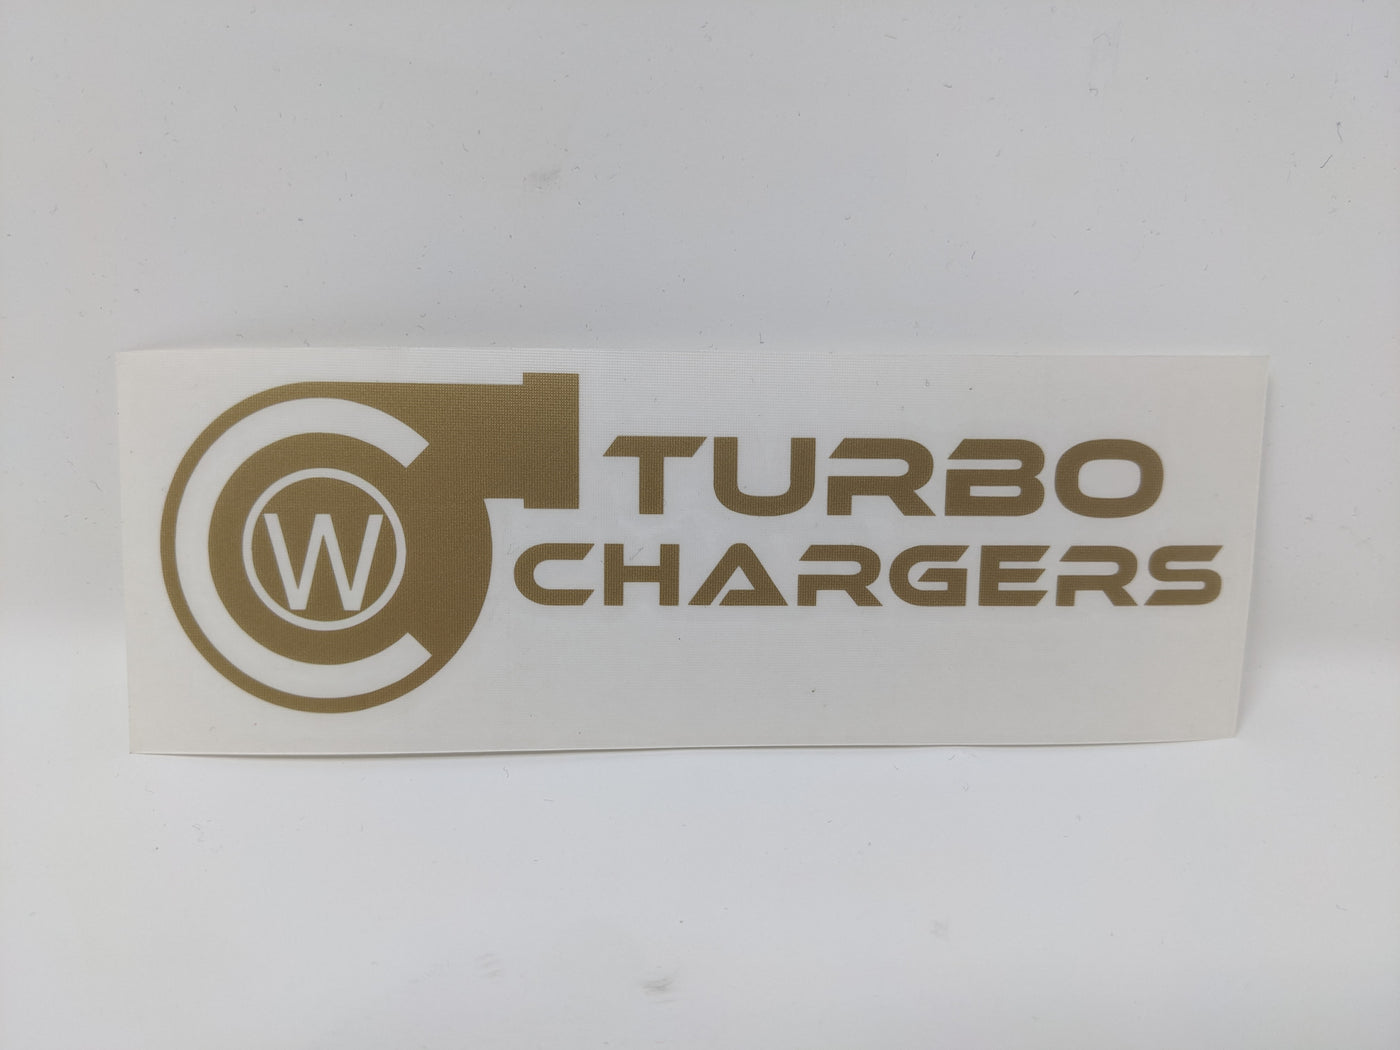 Autocollant/décalcomanie en vinyle CW Turbochargers 6x2 »